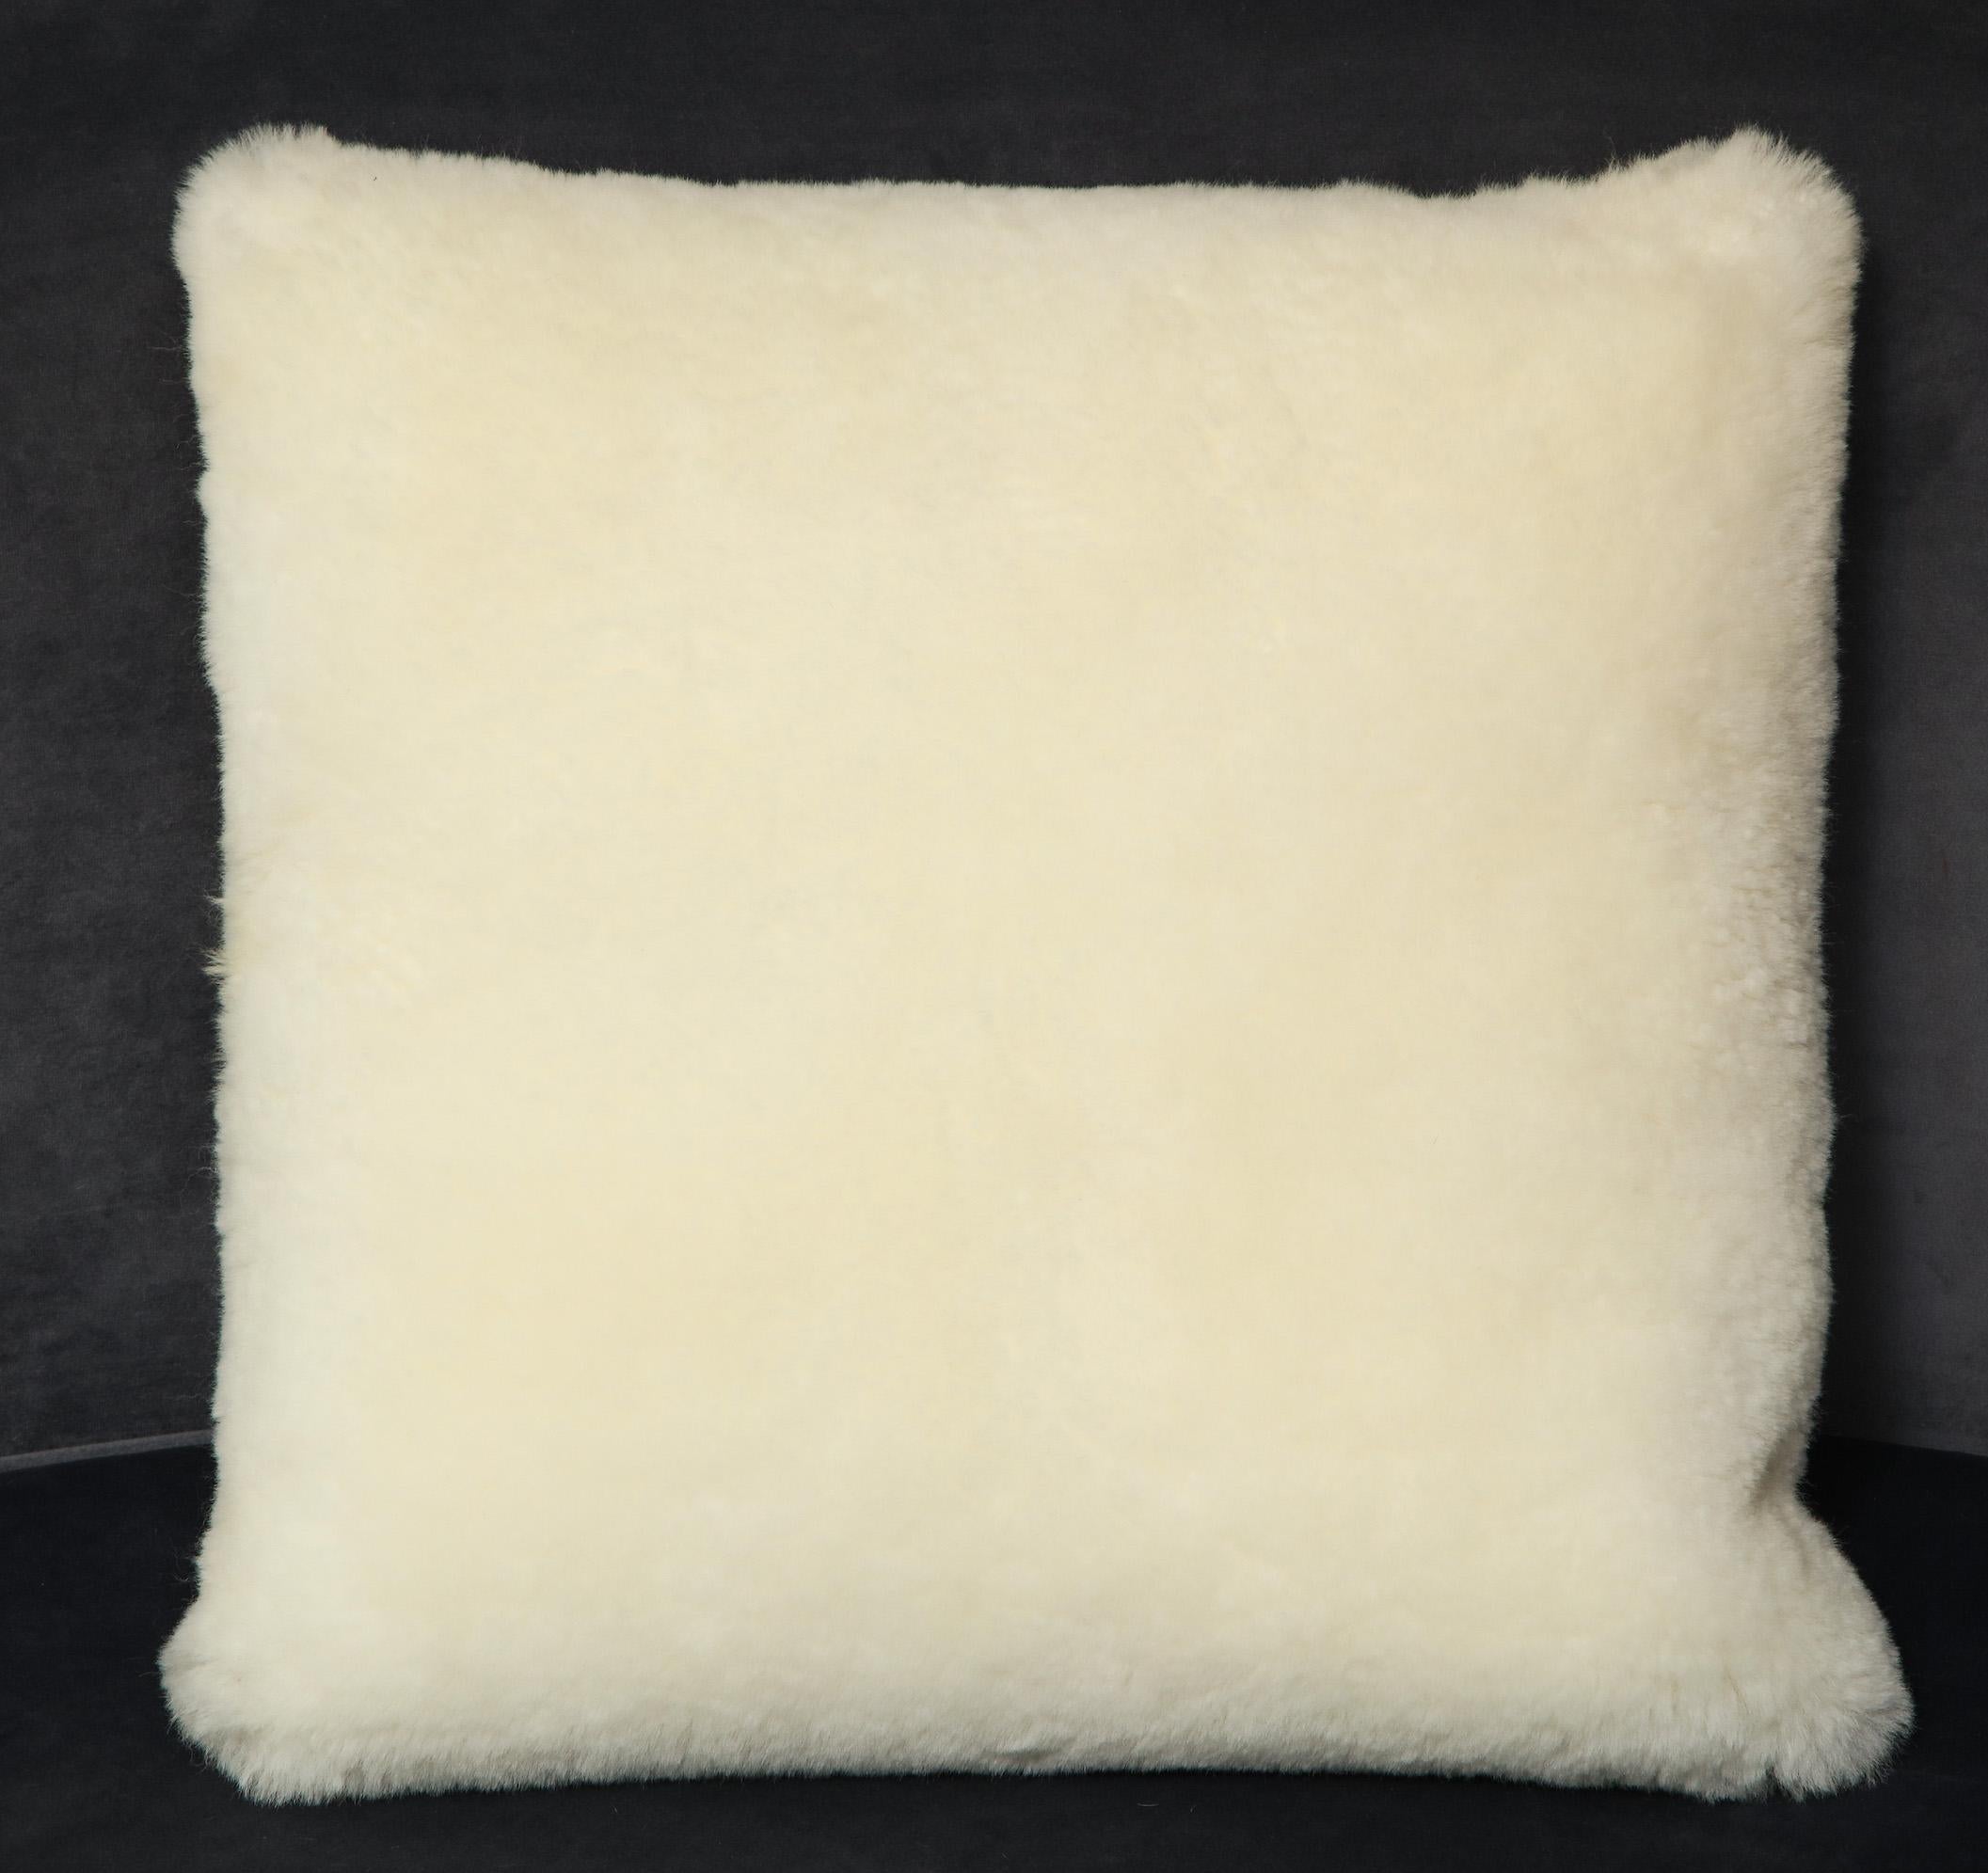 Coussin carré en peau de mouton de 45,72 cm de diamètre, fait sur mesure et de couleur crème. Des commandes personnalisées sont disponibles pour différentes tailles et couleurs.